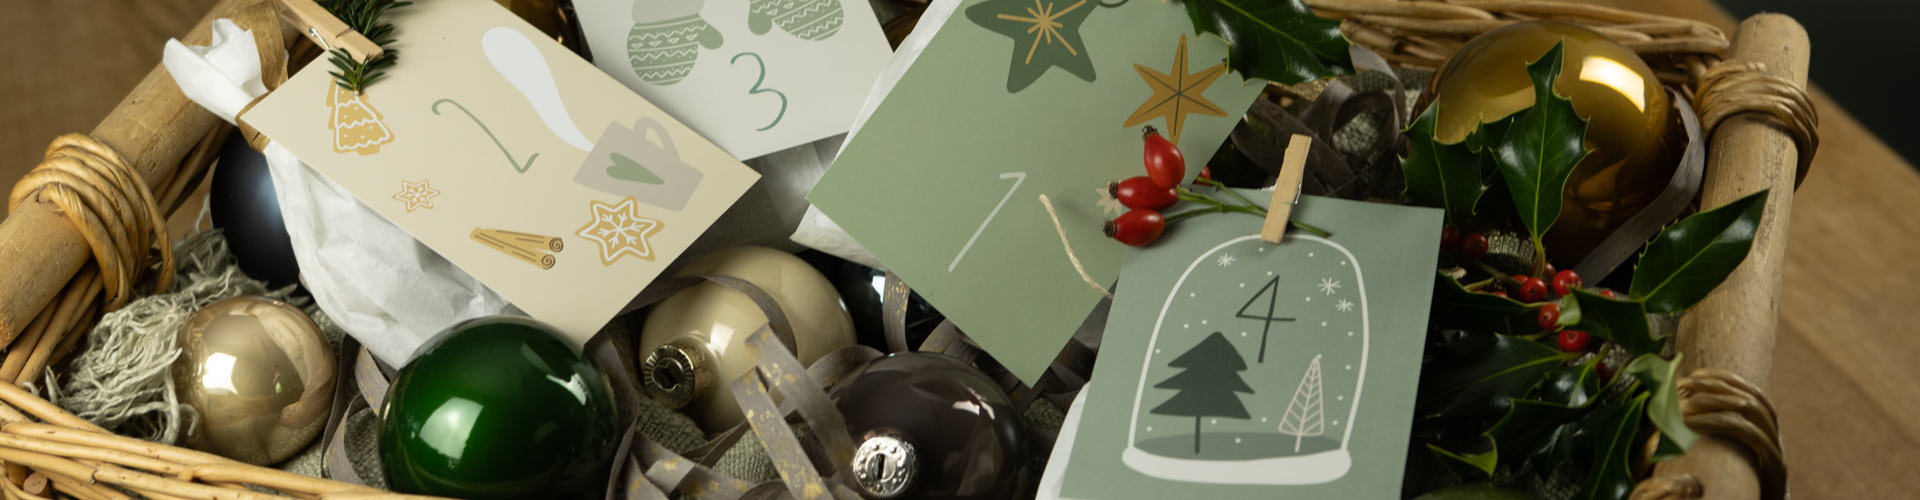 Postkarten Adventskalender mit kleinen Geschenken im Korb